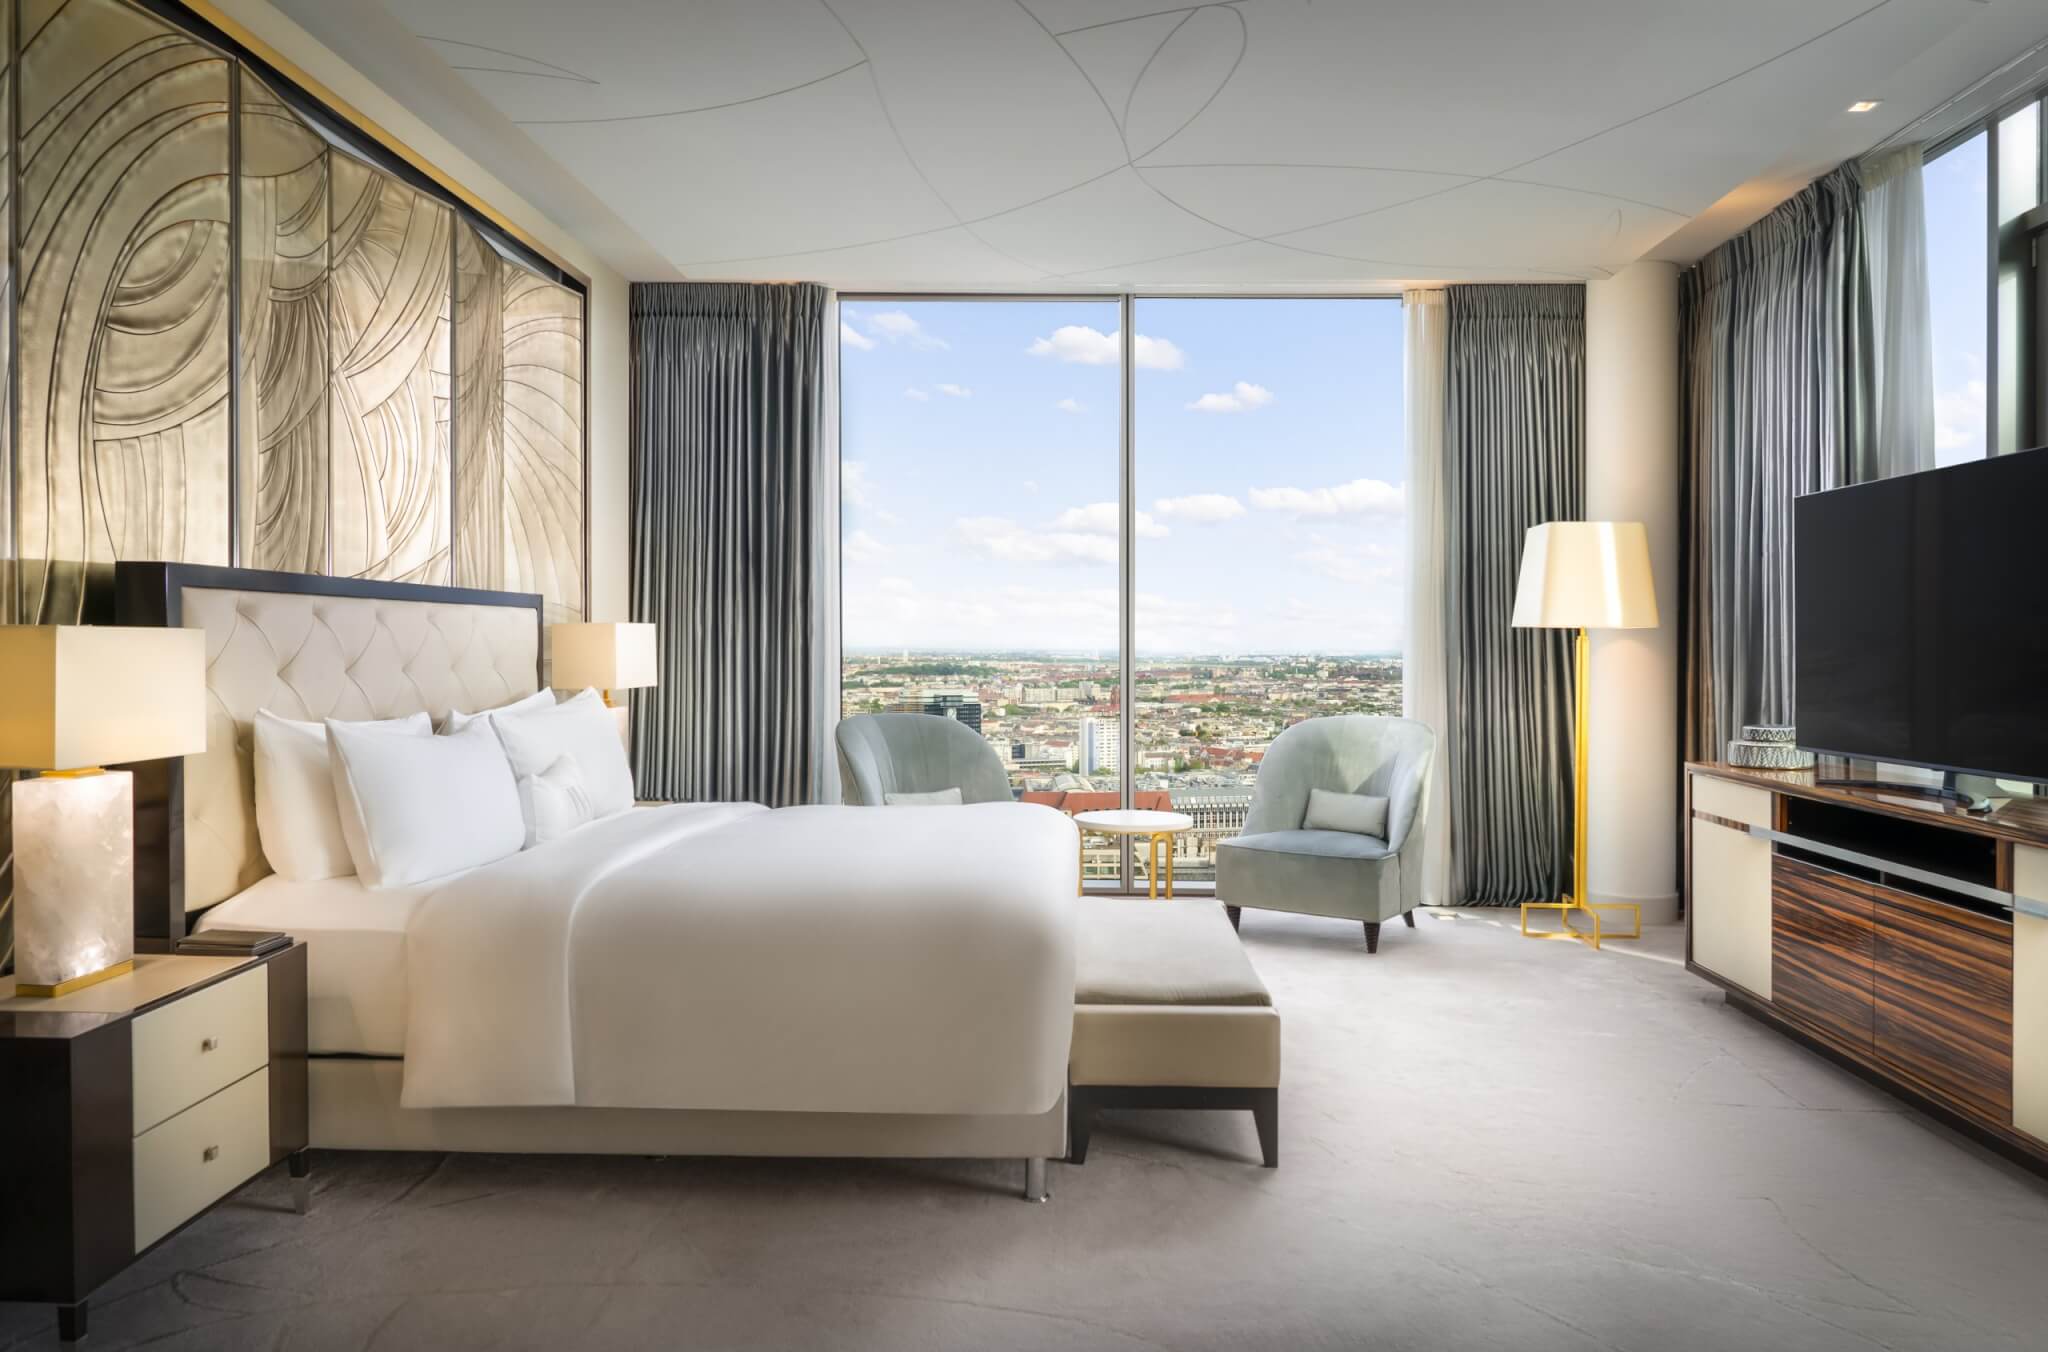 Suite mit Weitblick: Höchster Komfort und atemberaubende Aussicht in den ul-timativen Tower-Suiten des Waldorf Astoria Berlin